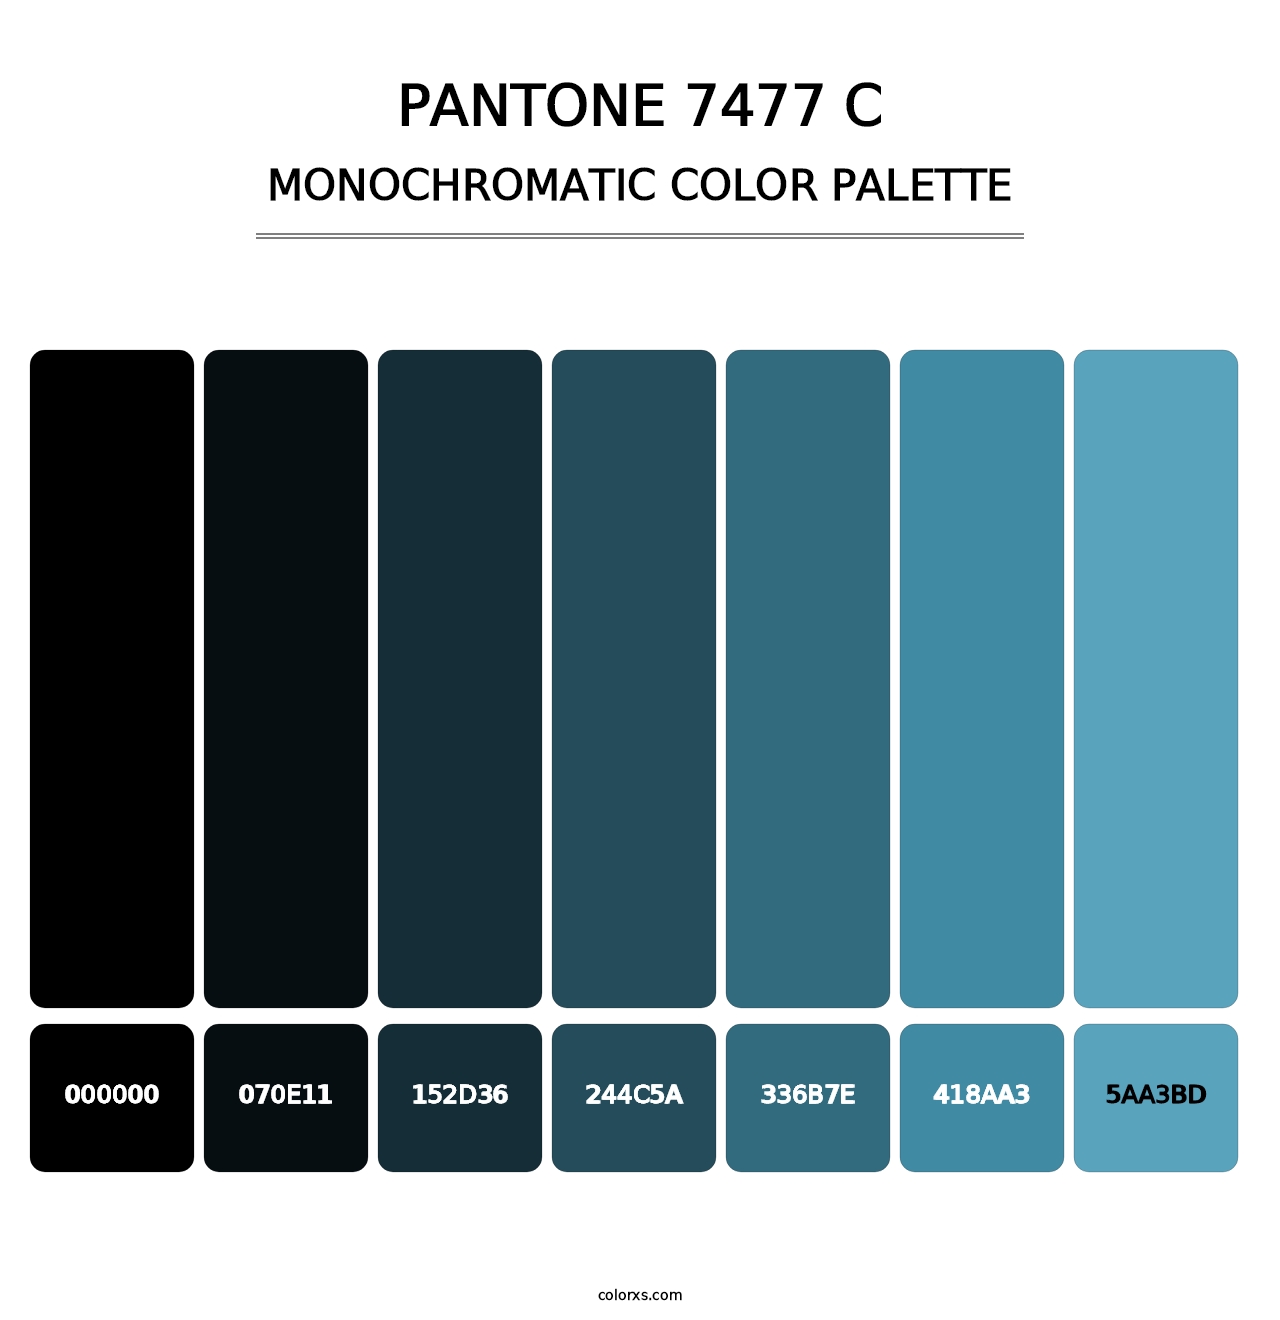 PANTONE 7477 C - Monochromatic Color Palette